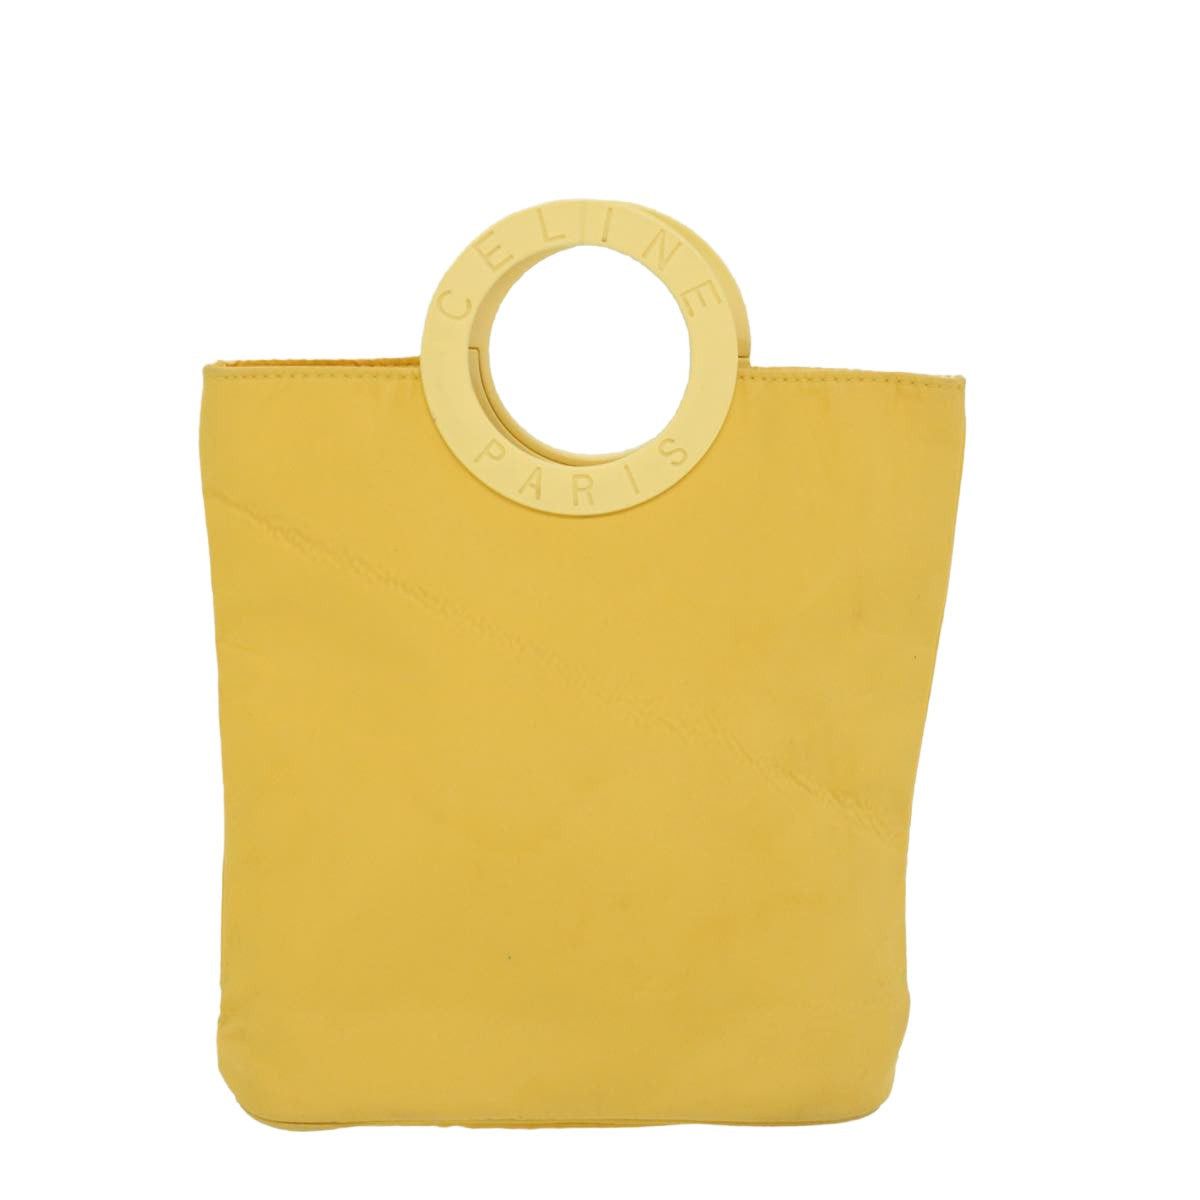 image of Celine Handbag in Yellow, Women's